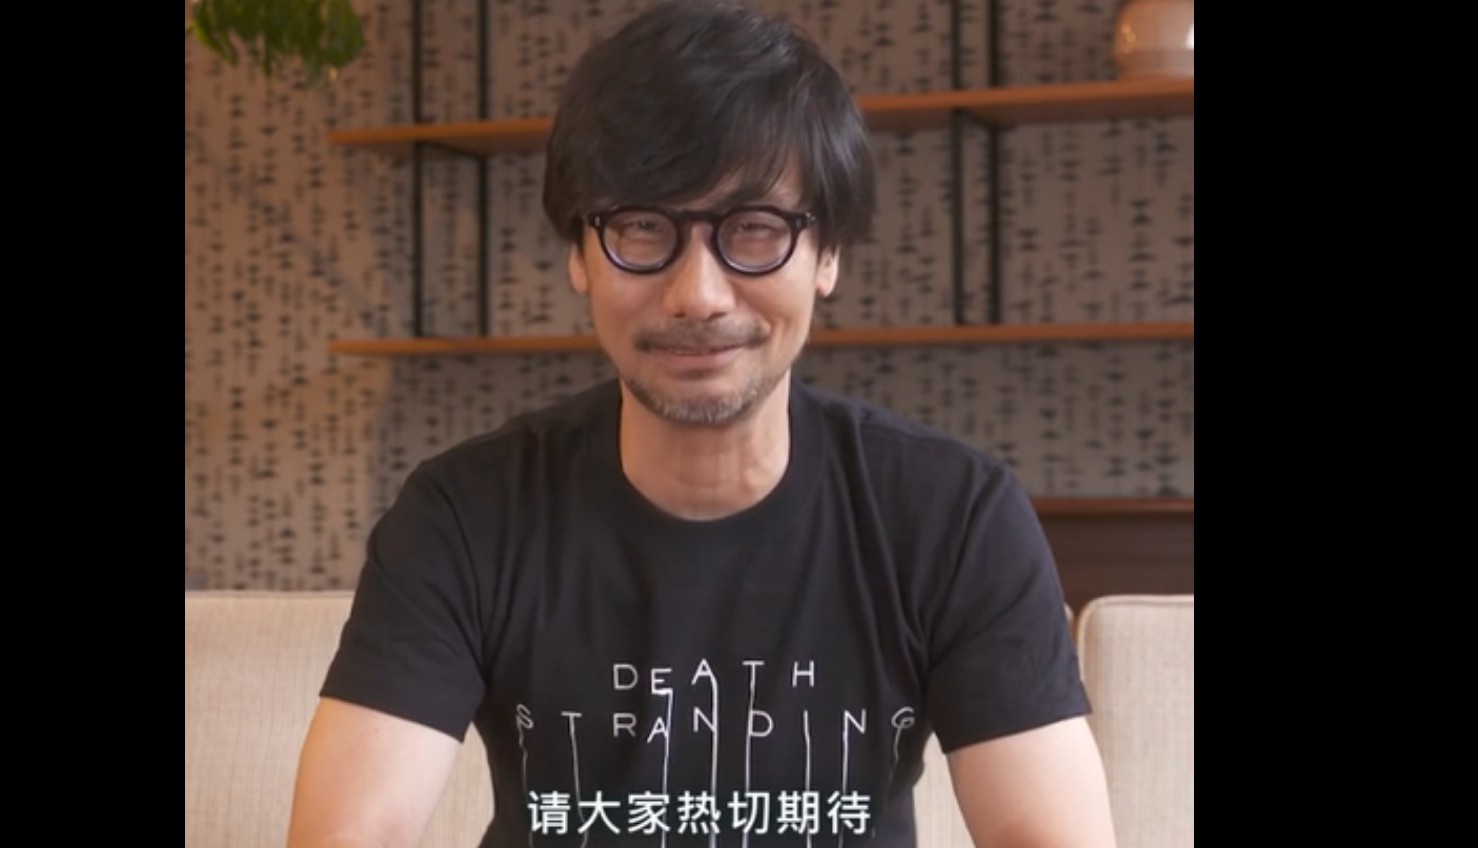 小岛秀夫发视频问候亚洲玩家 并为《死亡搁浅》造势